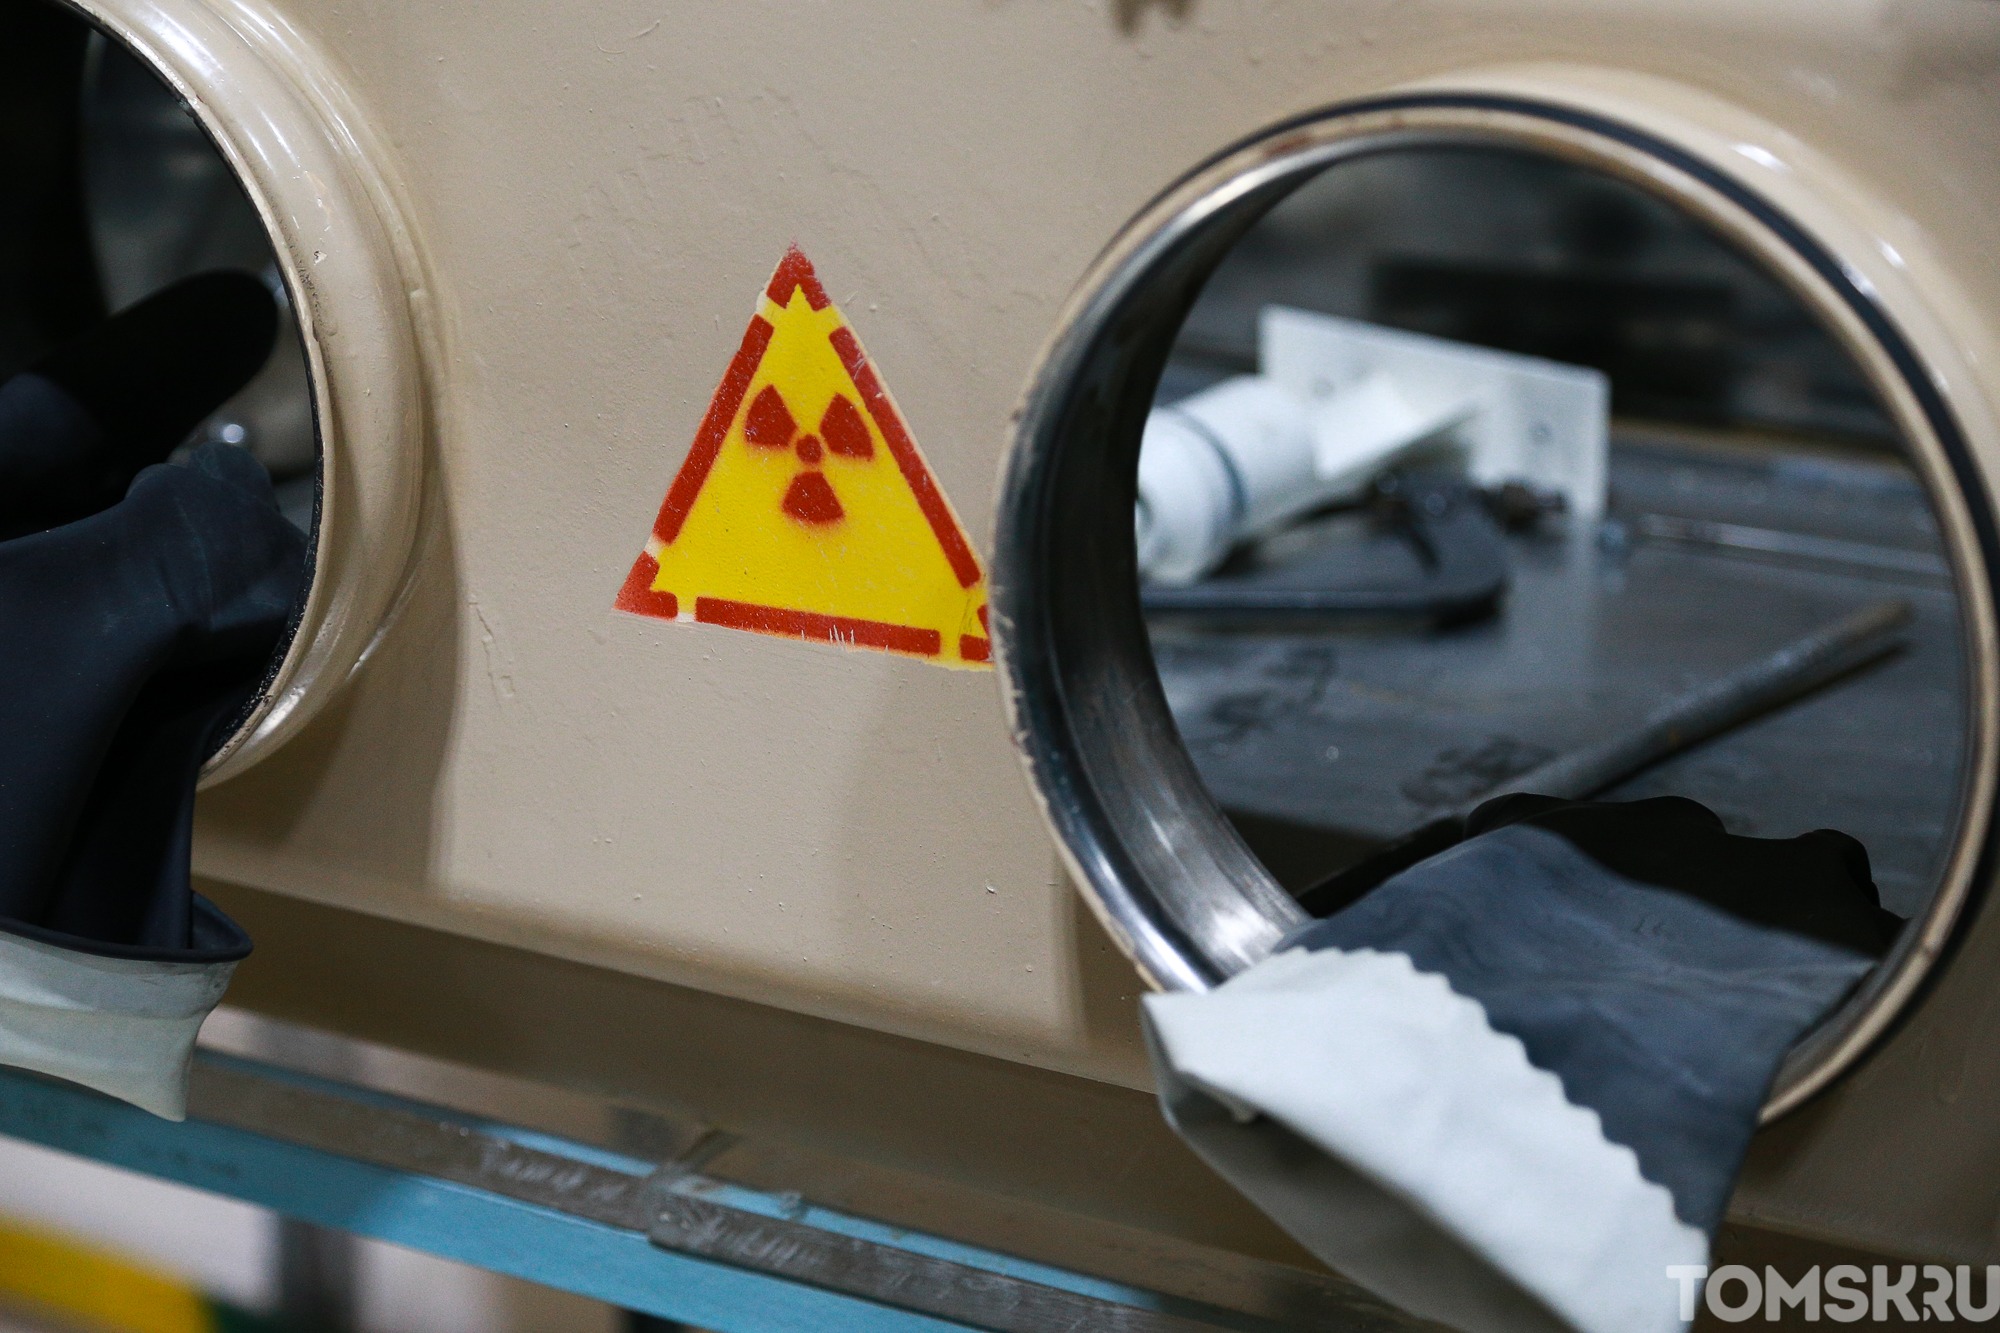 Томские ученые создали защитное покрытие от радиации с самовосстановлением